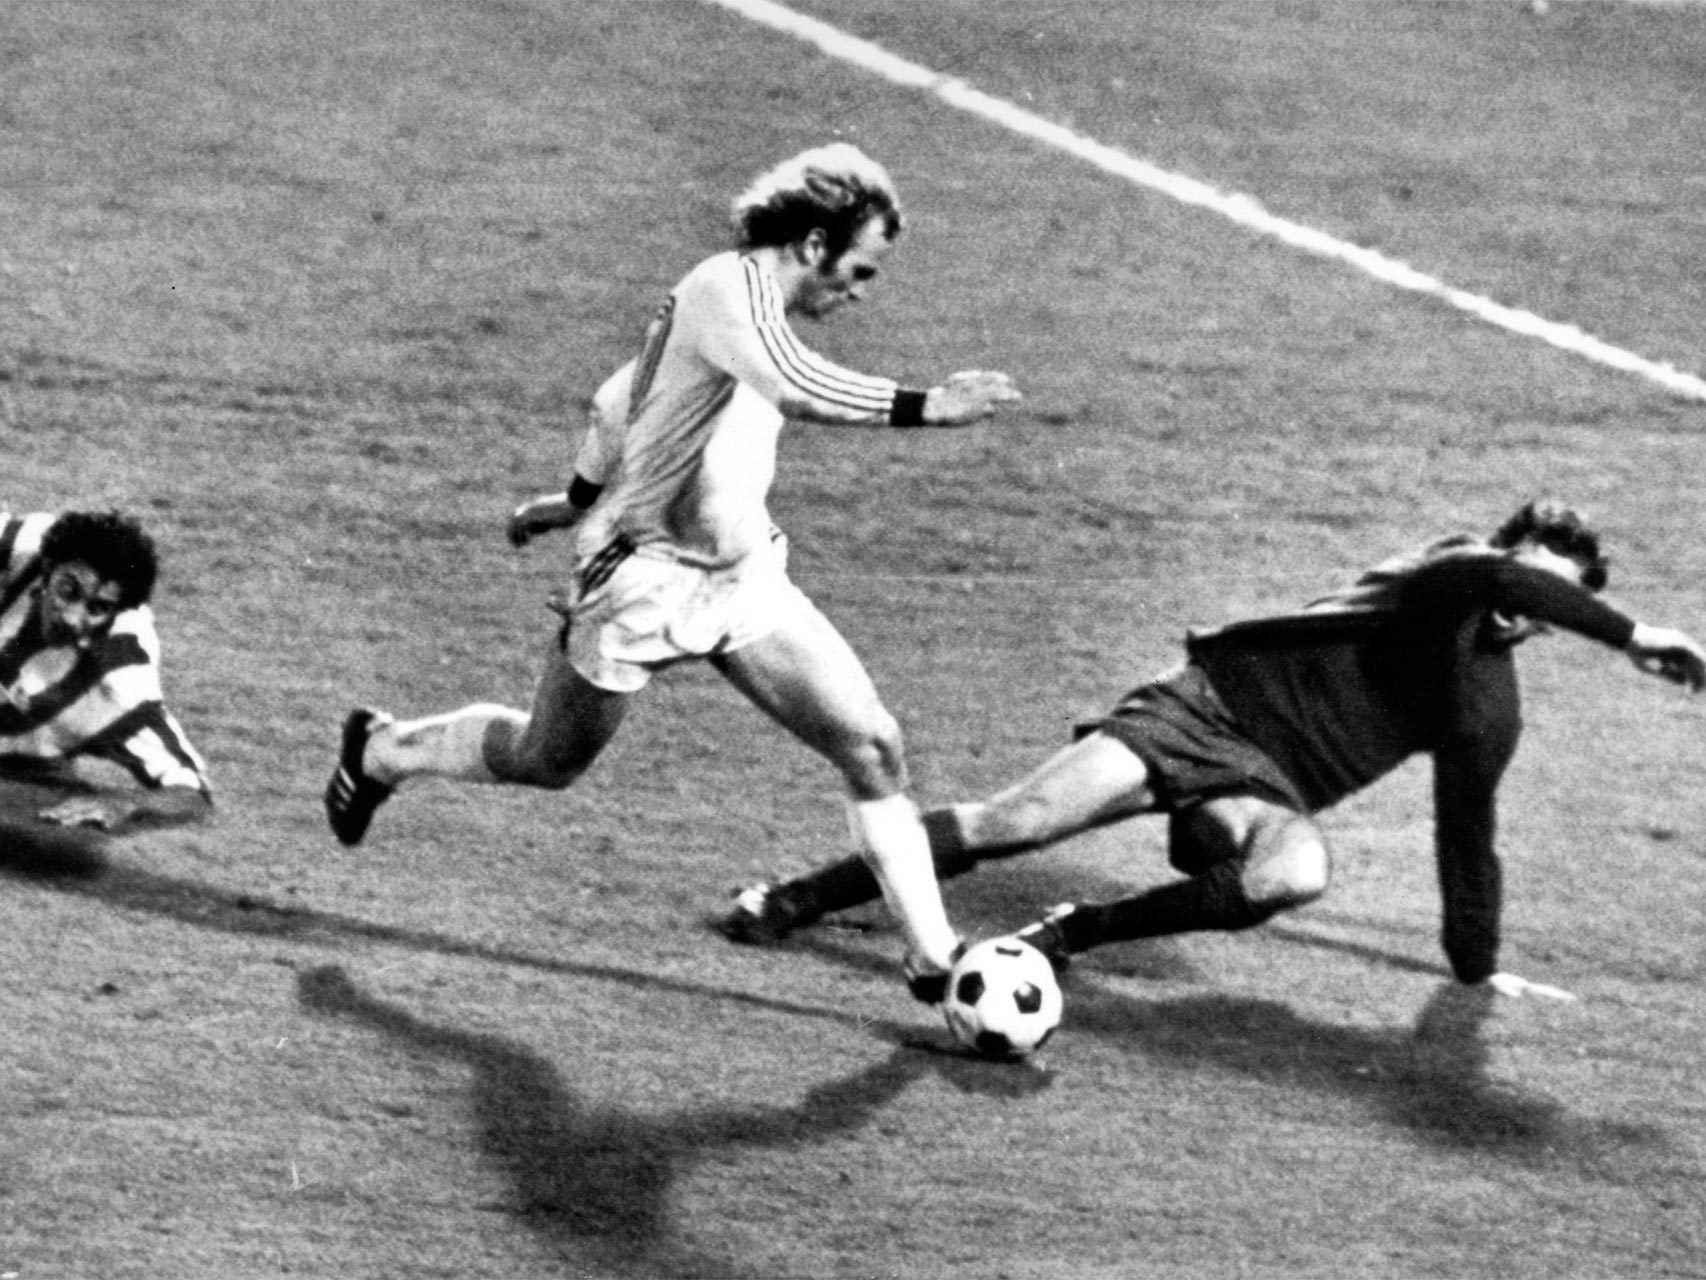 Desempate de la final de 1974 (Bayern Munich 4 - Atlético Madrid 0). Uli Hoeness marca el segundo gol.